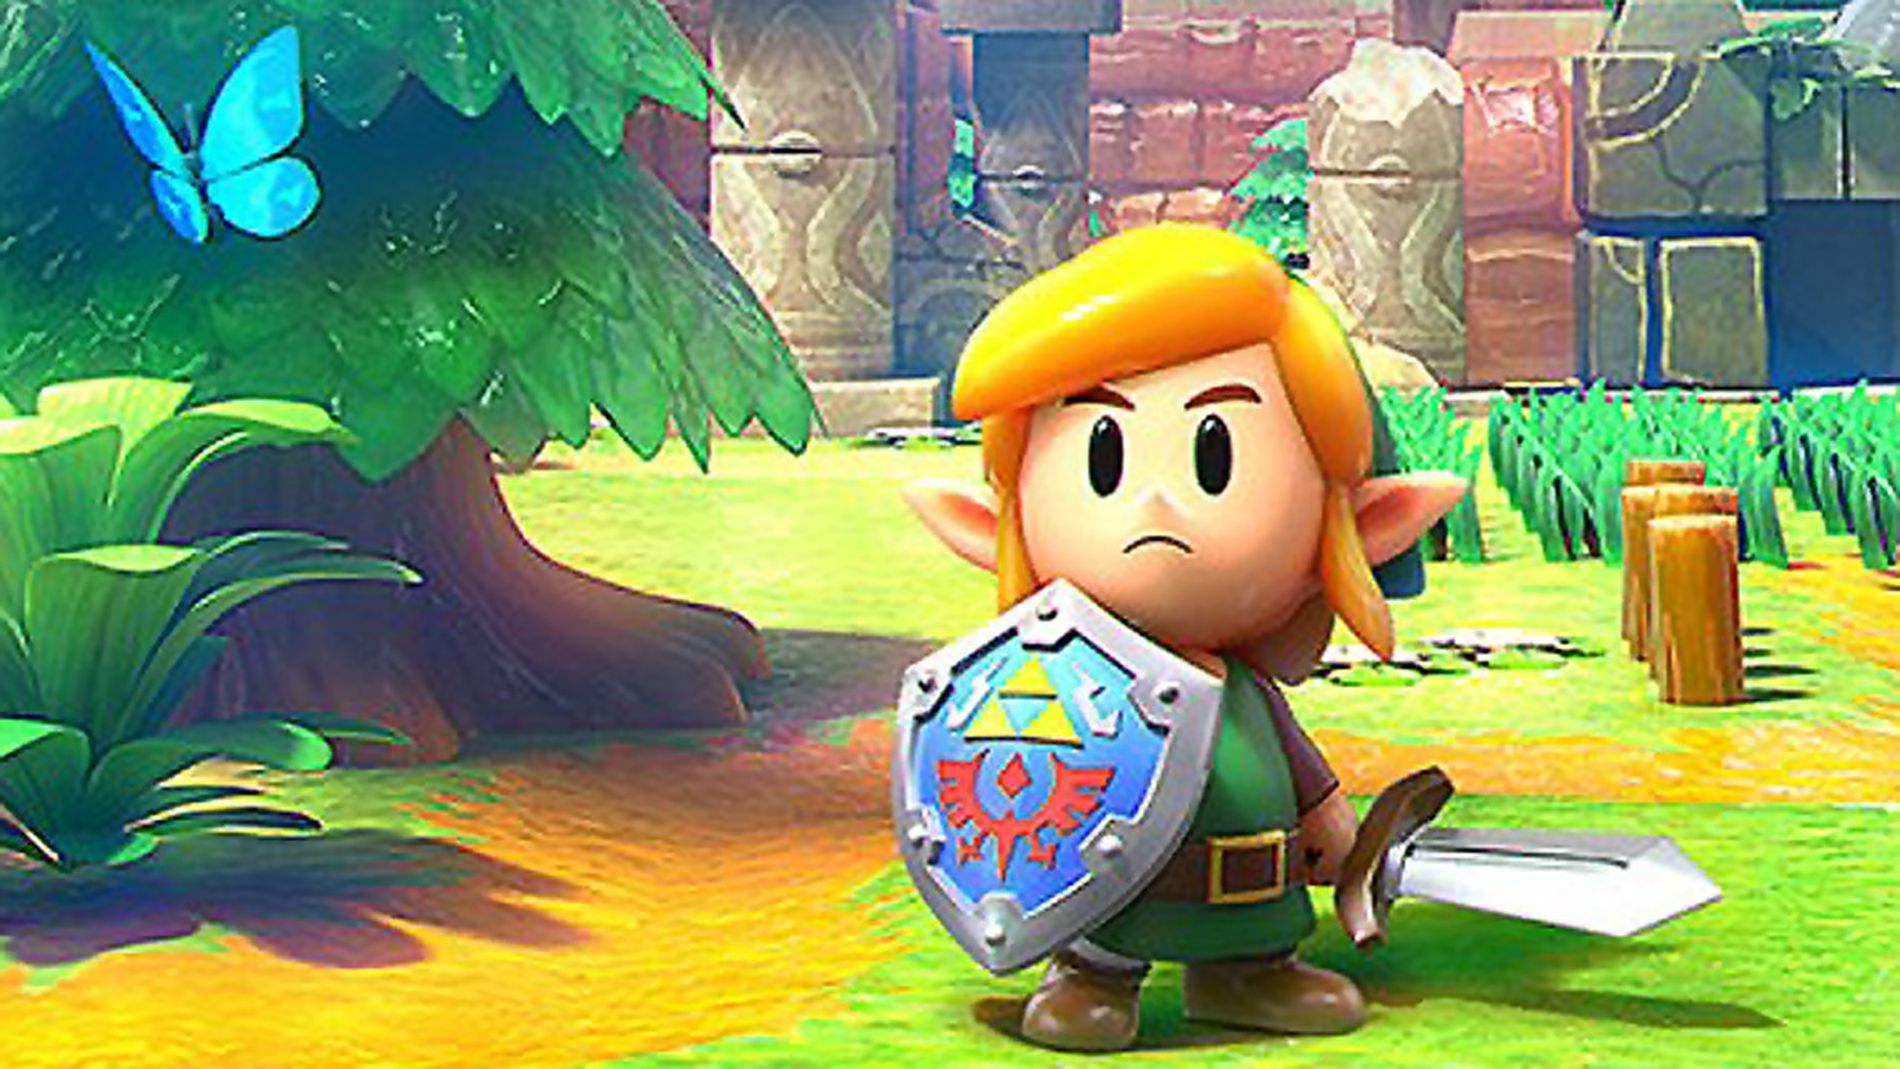 Bilder zu Zelda-Kopie: Fans beschuldigen Indie-Spiel von Link's Awakening zu klauen